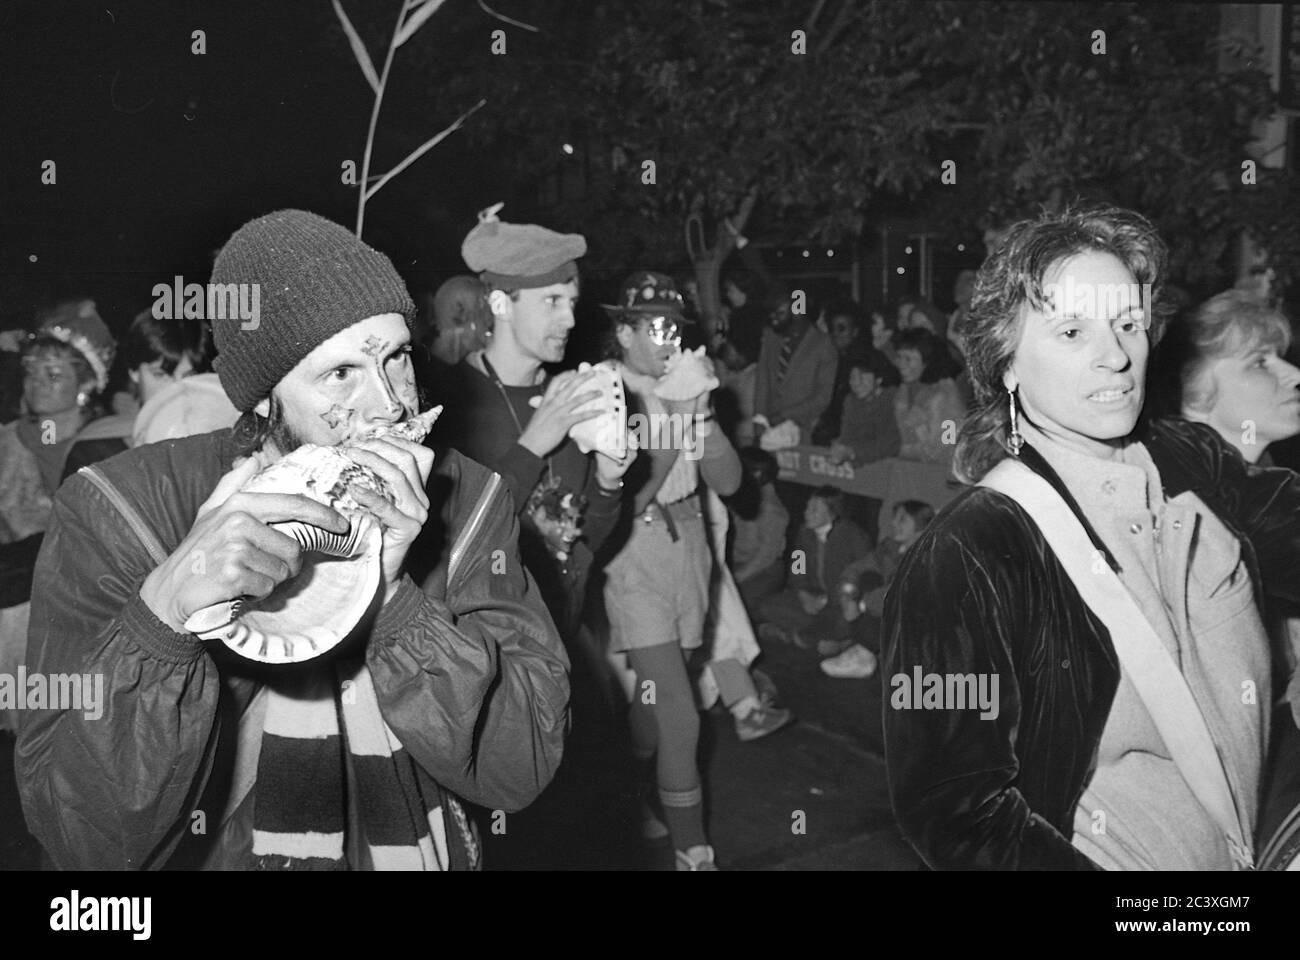 Les participants à la parade d'Halloween de Greenwich Village, New York City, États-Unis, dans les années 1980, ont été photographiés avec un film noir et blanc la nuit. Banque D'Images